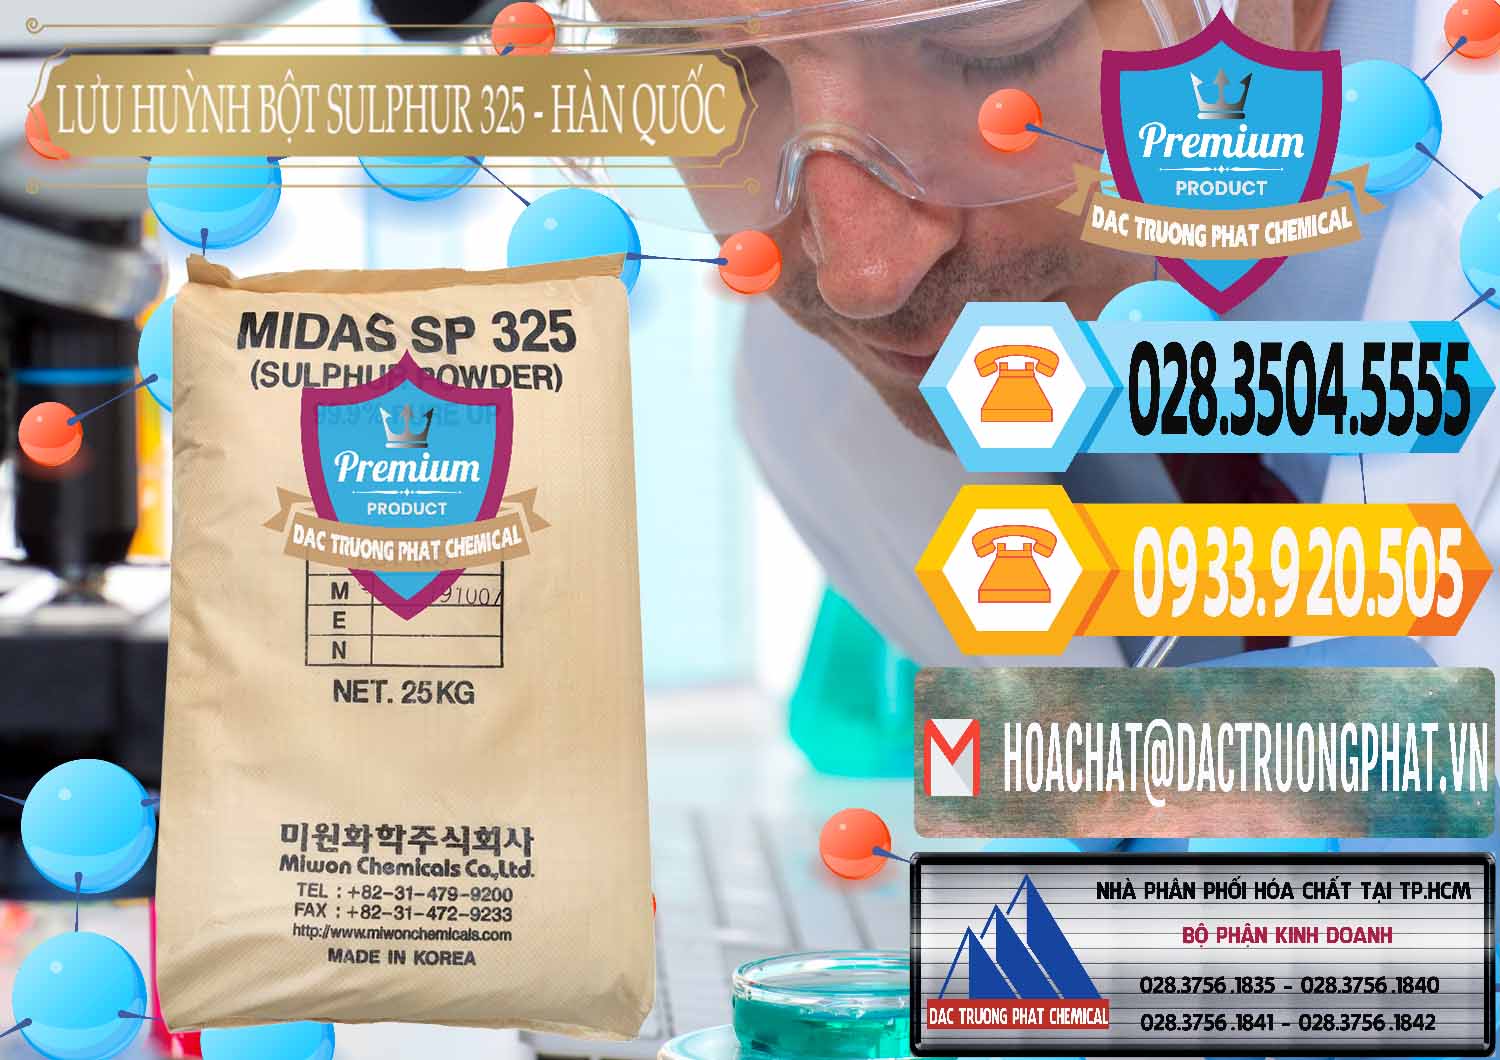 Chuyên cung cấp _ bán Lưu huỳnh Bột - Sulfur Powder Midas SP 325 Hàn Quốc Korea - 0198 - Nhà cung cấp và phân phối hóa chất tại TP.HCM - hoachattayrua.net